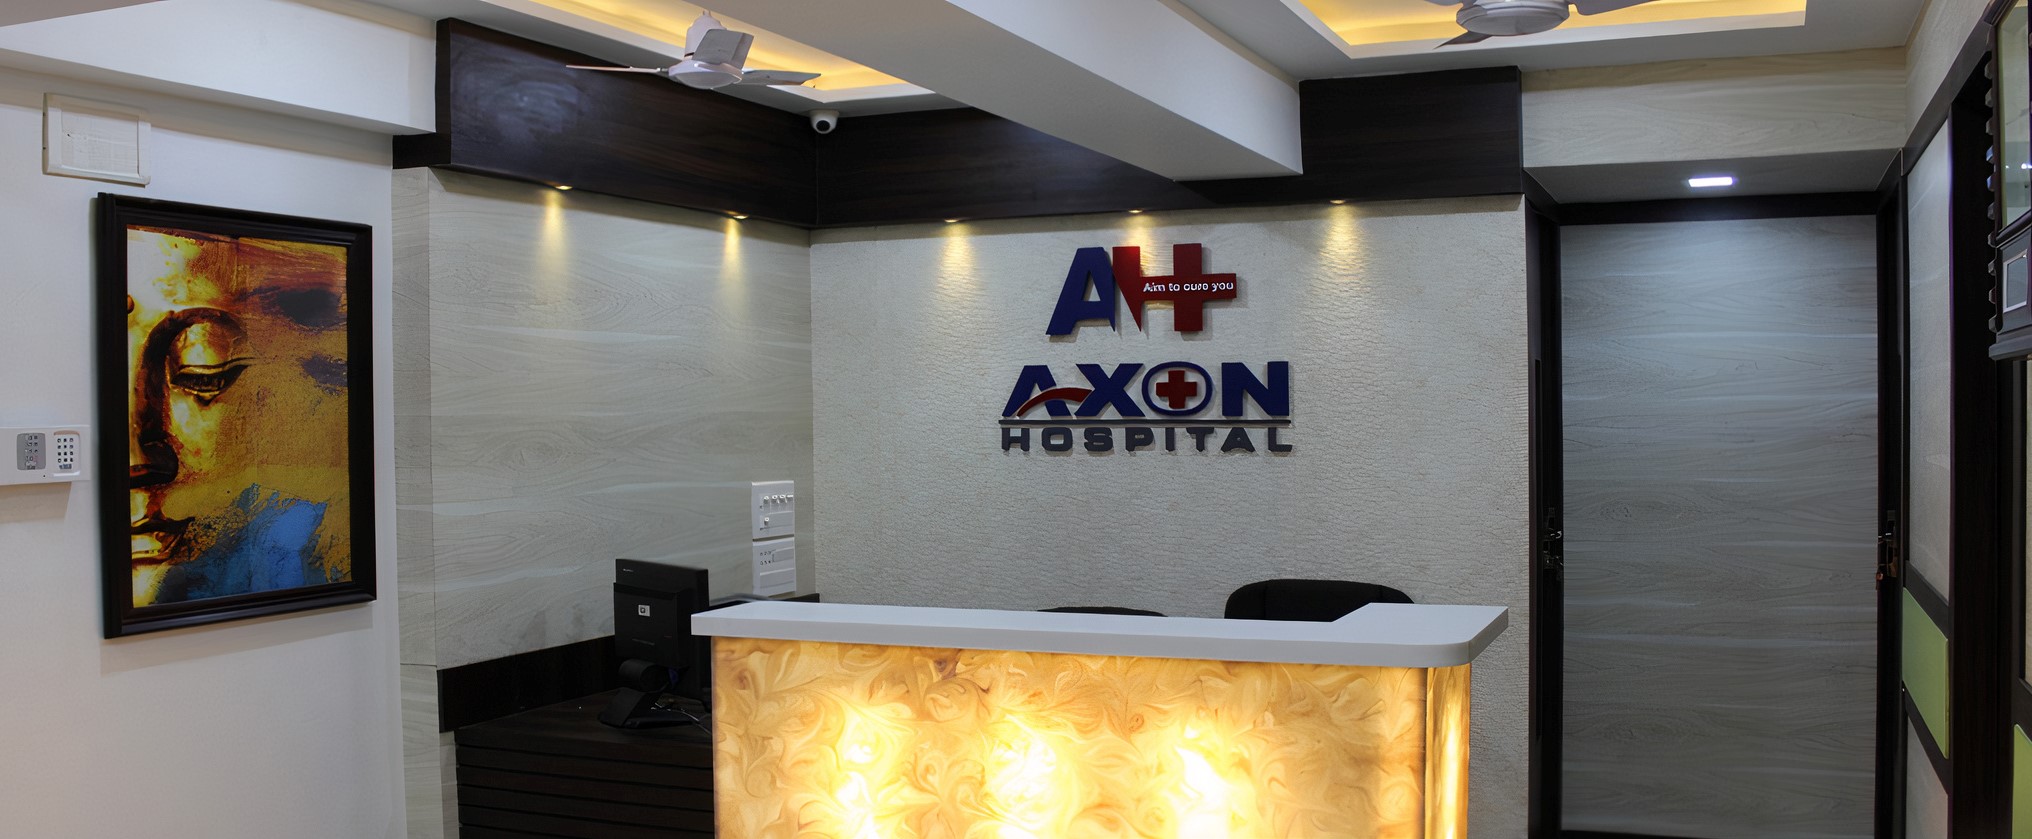 Axon Hospital photo